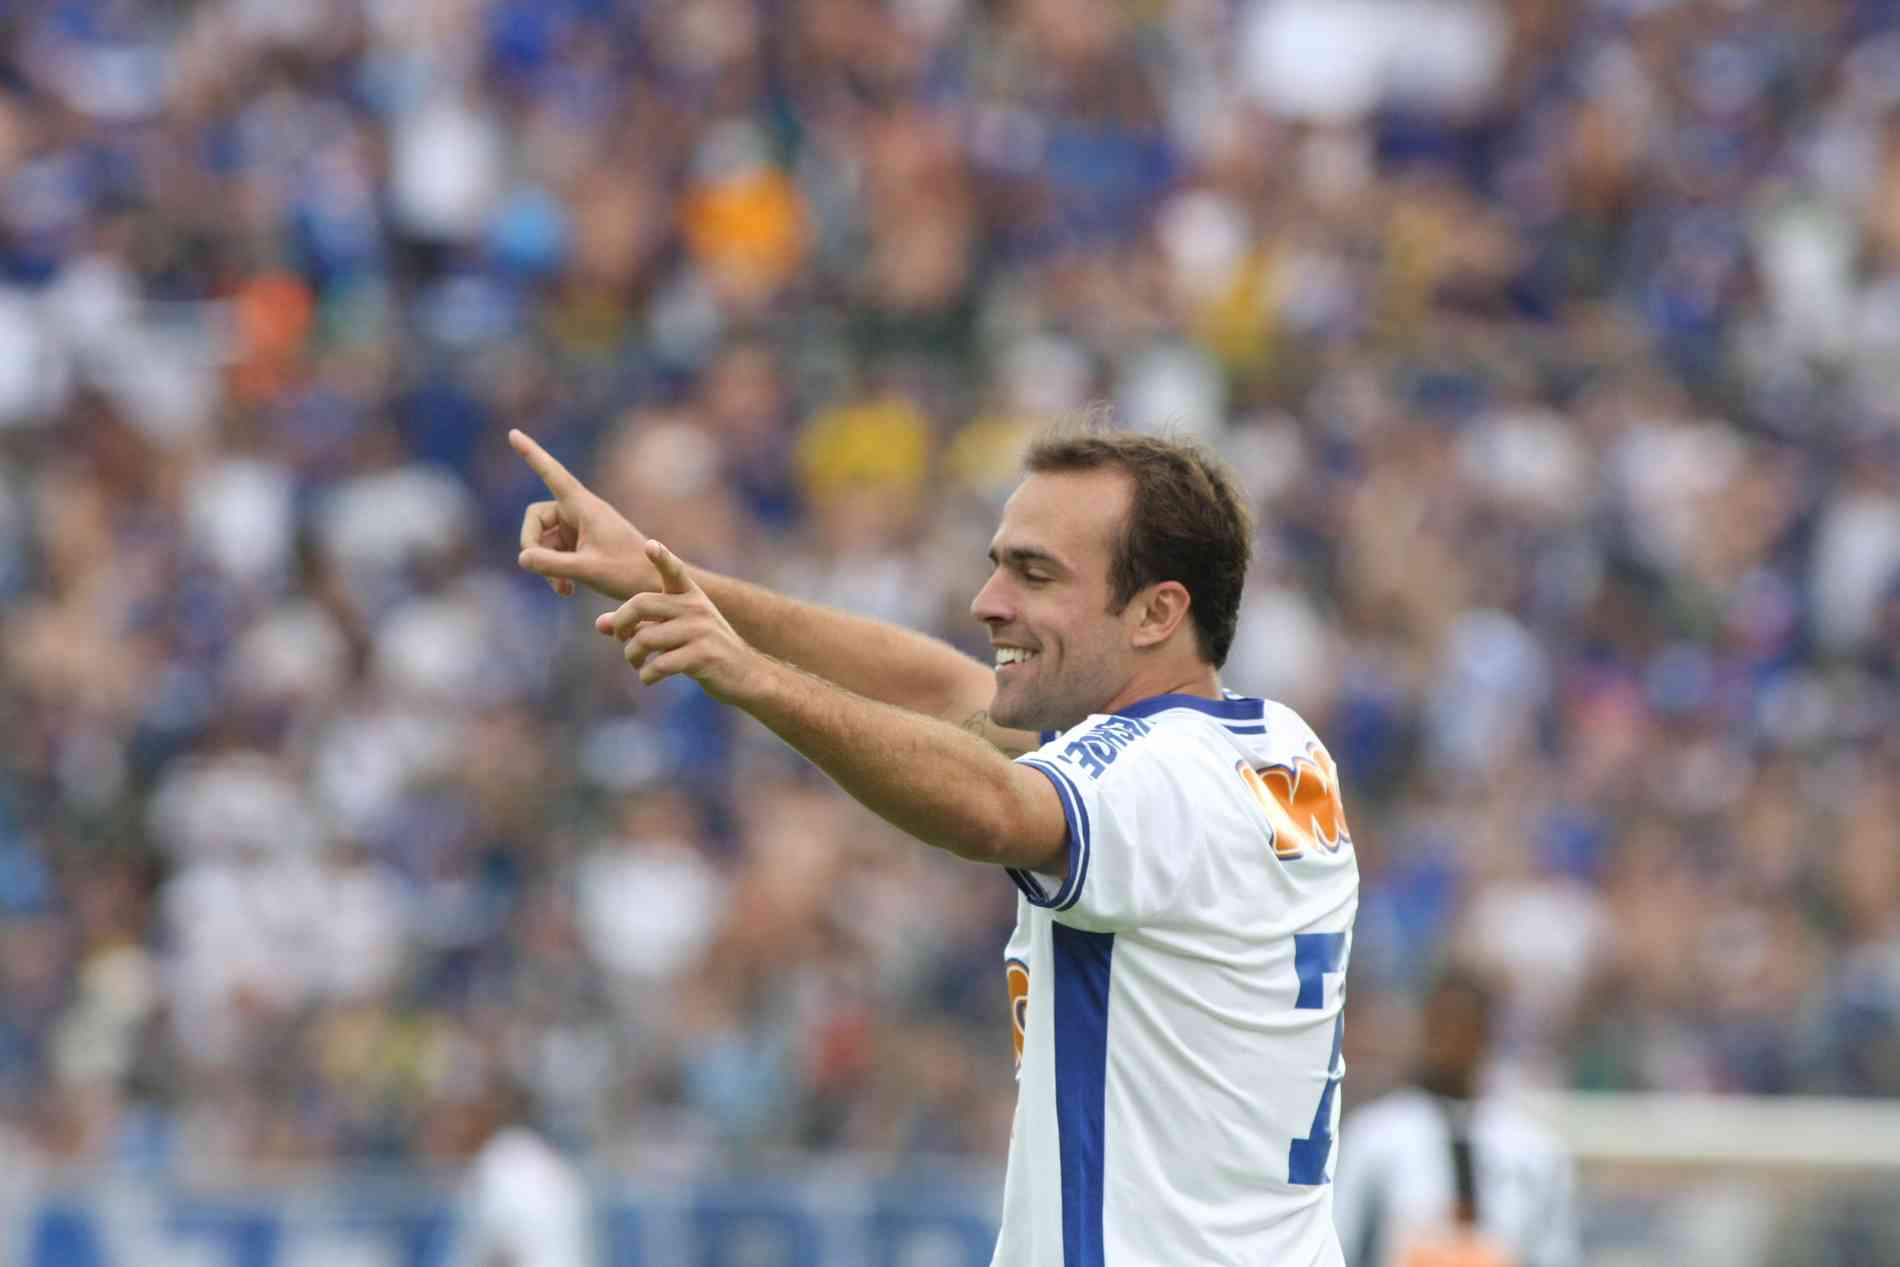 Dagoberto elogia elenco do Cruzeiro e quer estrear contra o Galo